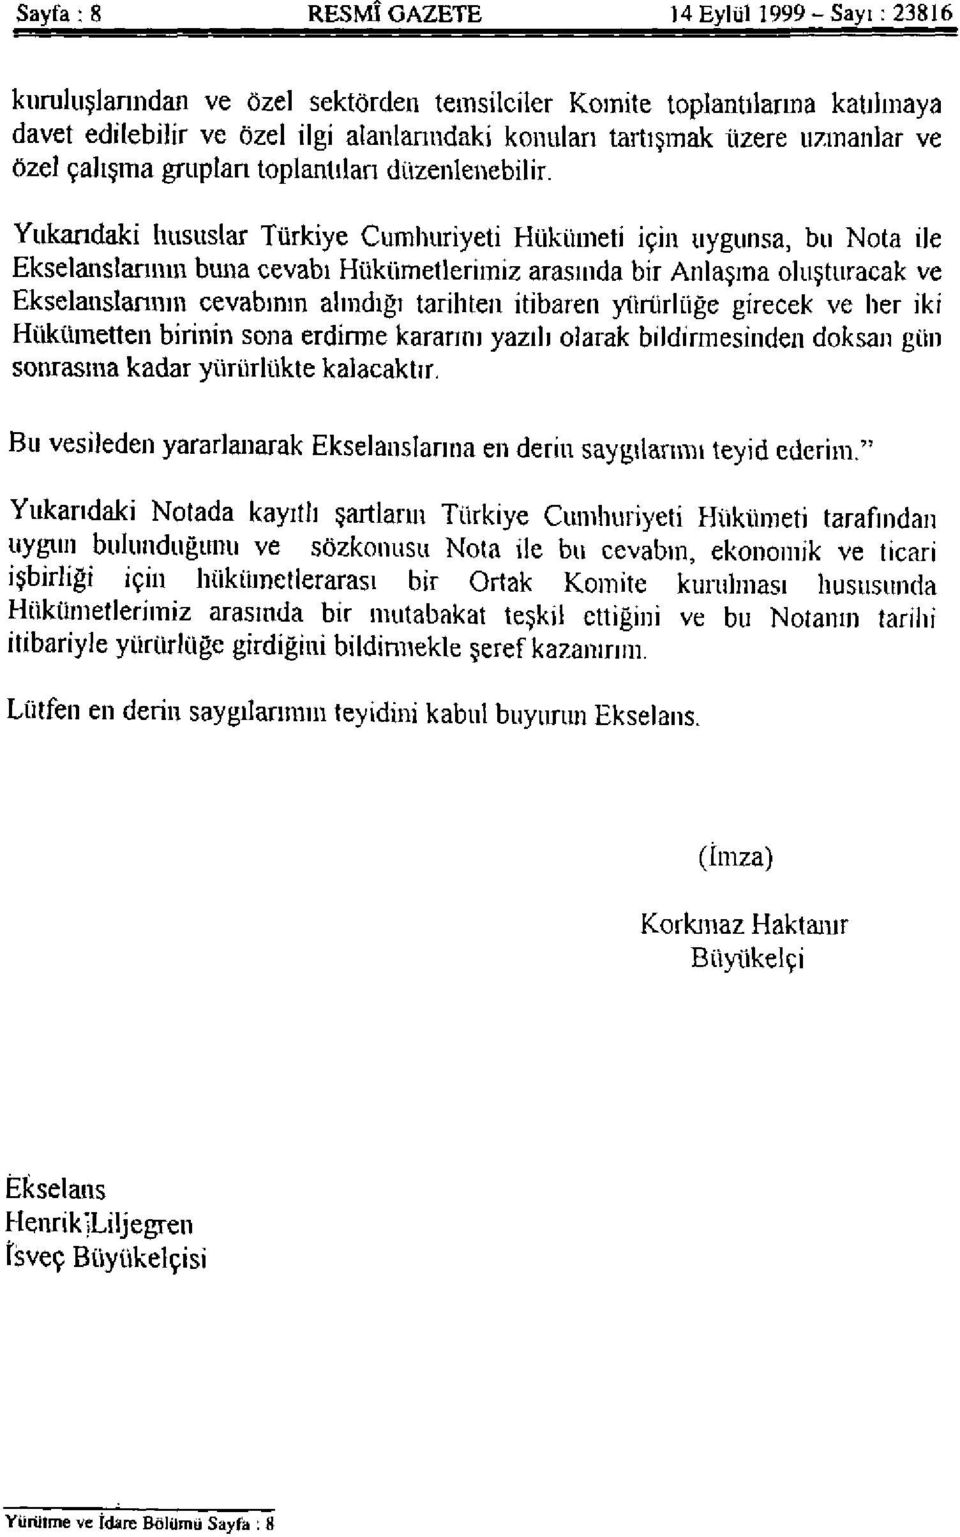 Yukarıdaki hususlar Türkiye Cumhuriyeti Hükümeti için uygunsa, bu Nota ile Ekselanslarının buna cevabı Hükümetlerimiz arasında bir Anlaşma oluşturacak ve Ekselanslarının cevabının alındığı tarihten